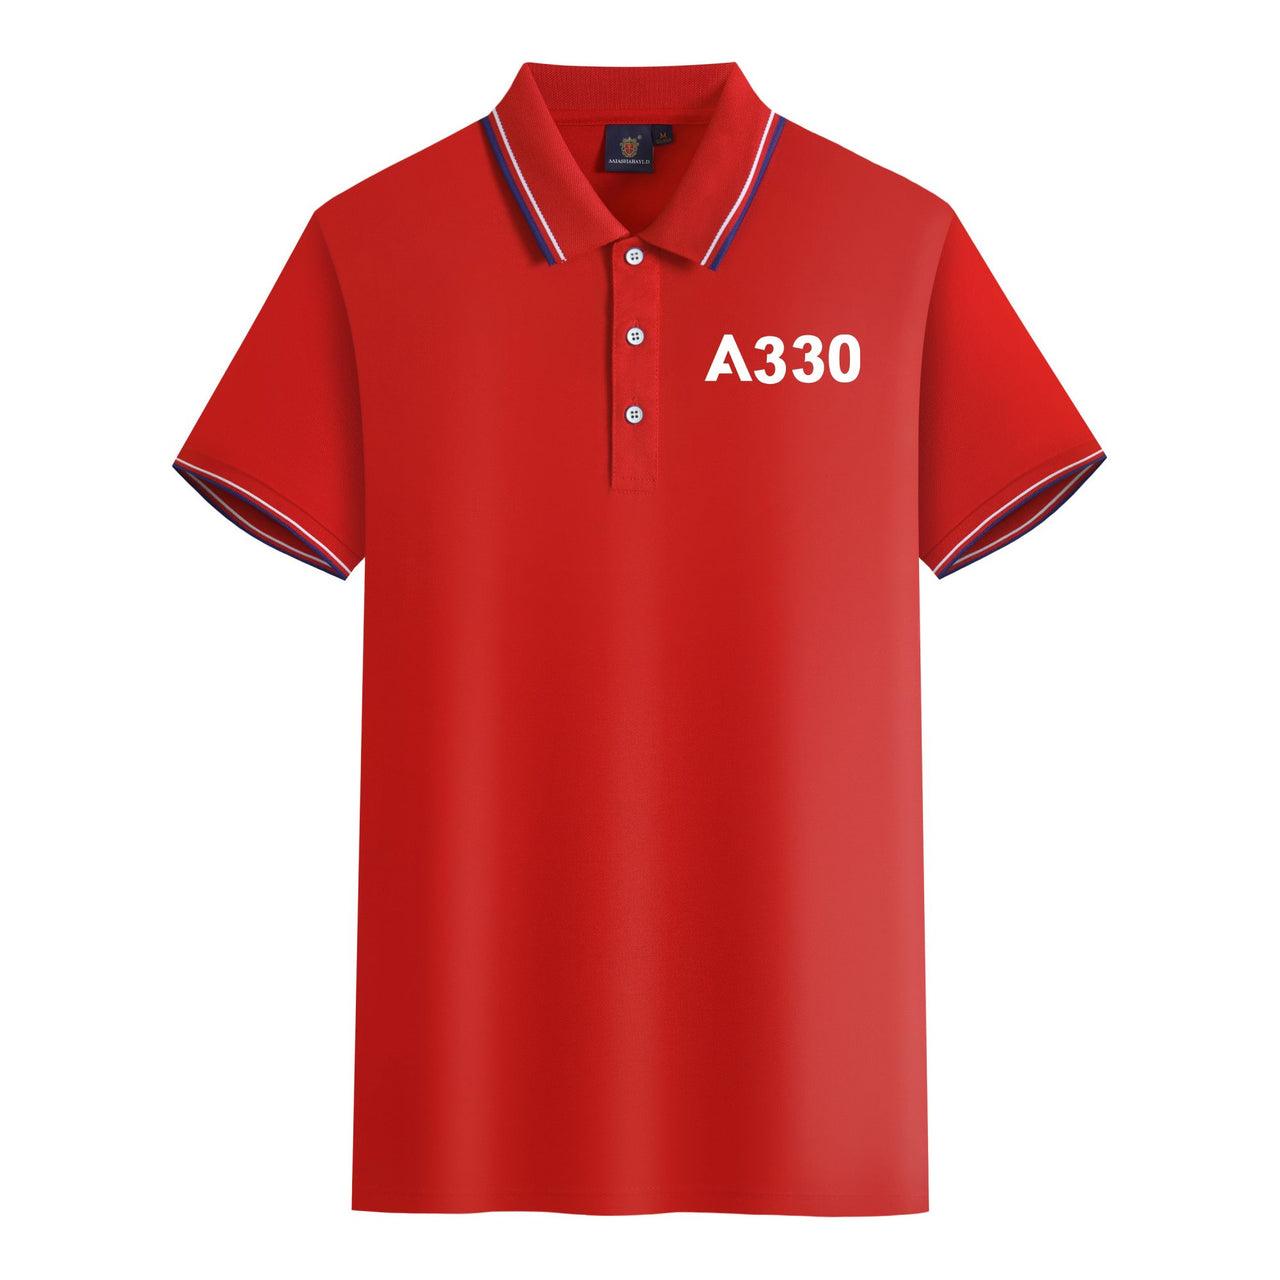 A330 Flat Text Designed Stylish Polo T-Shirts